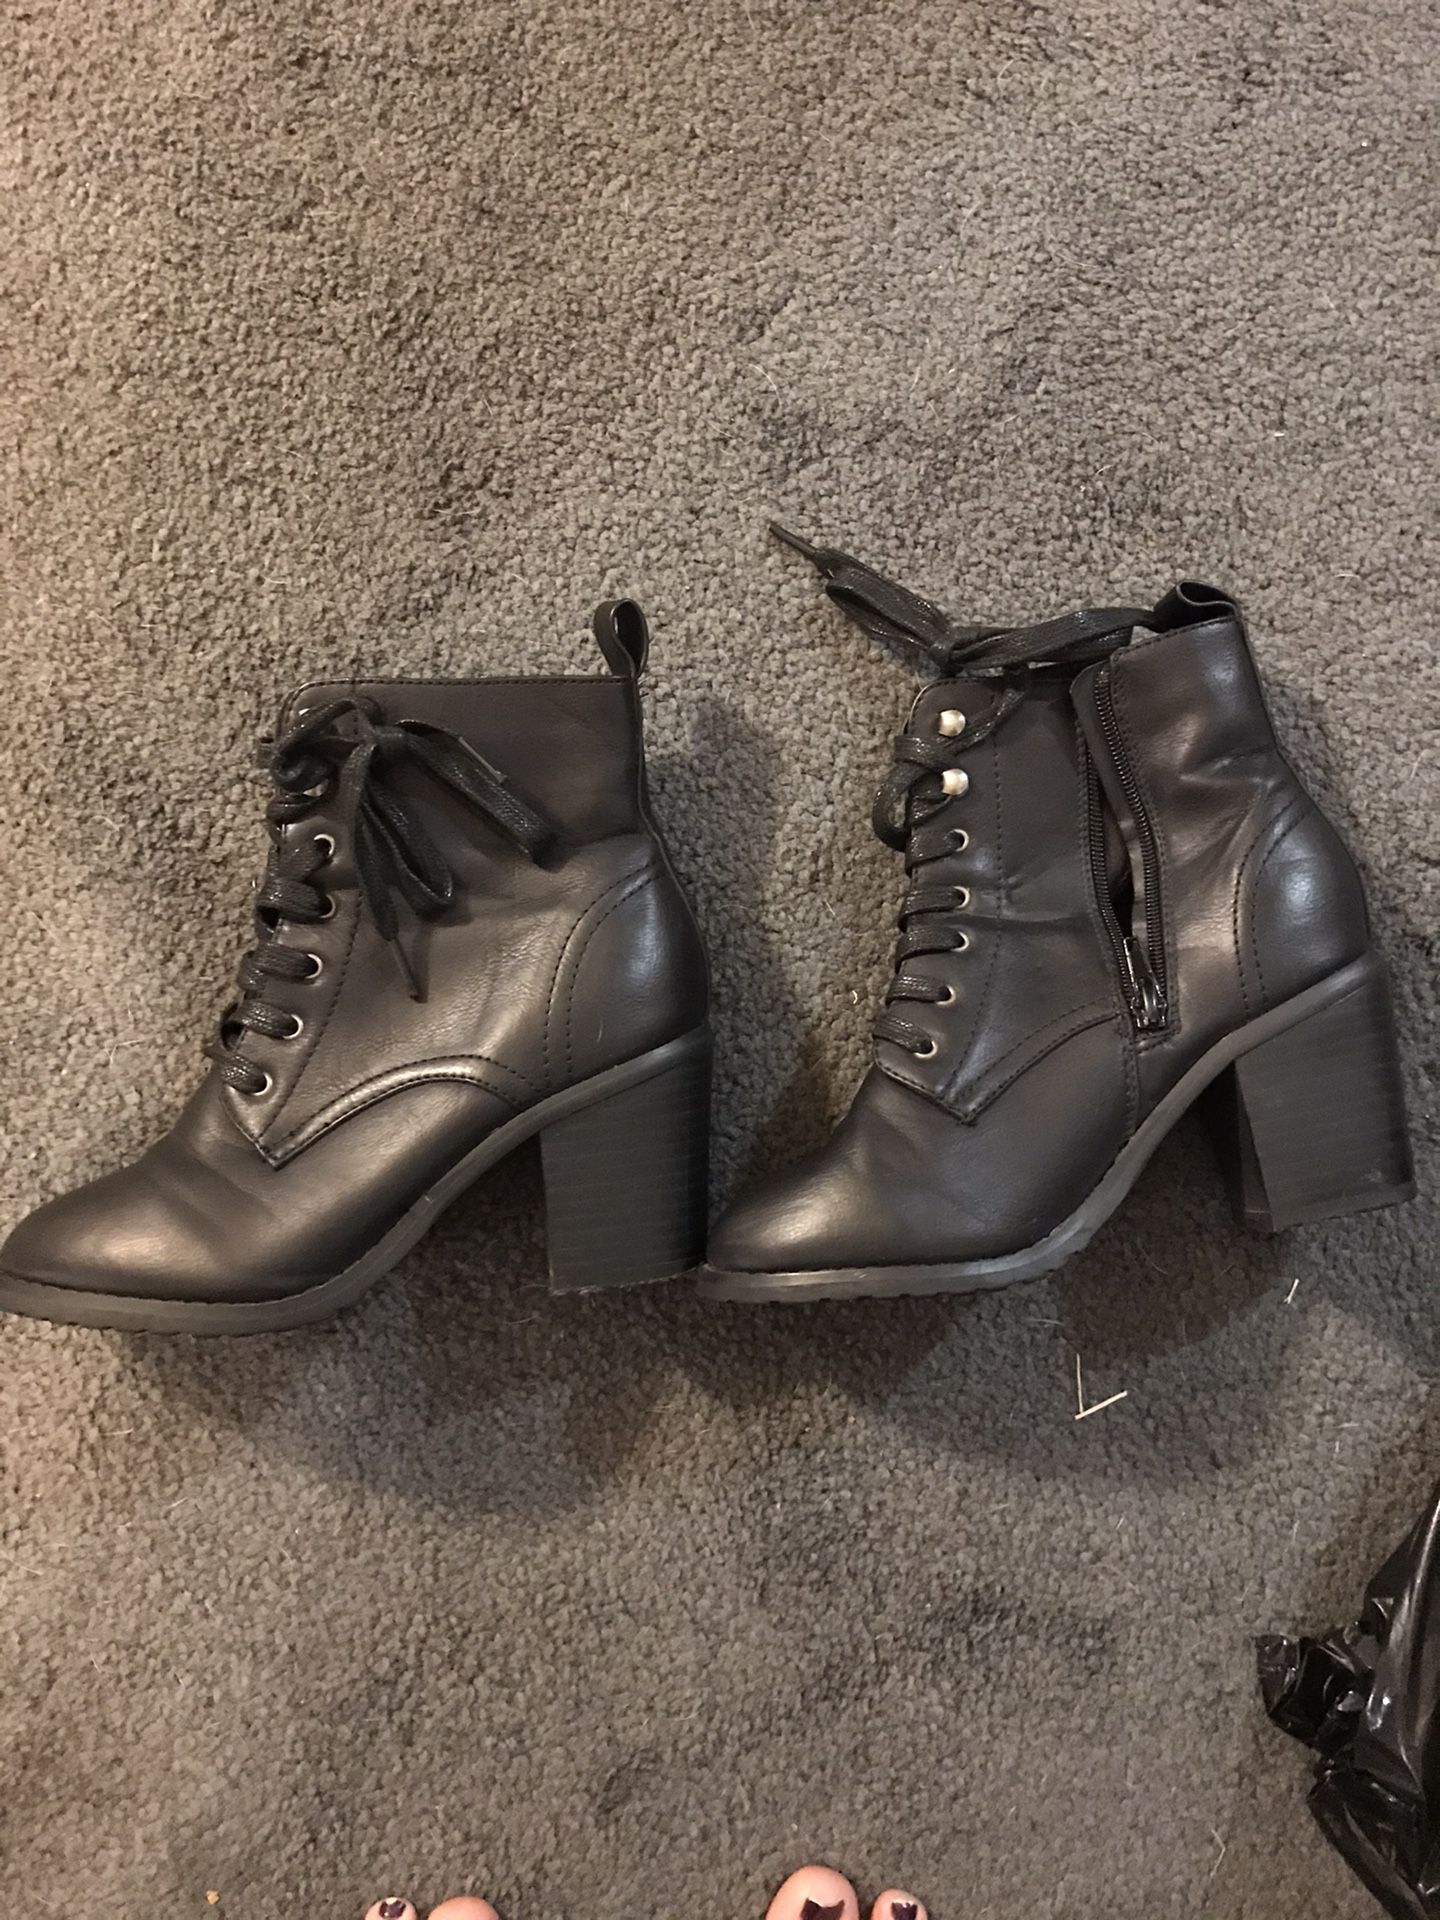 5/6 women’s heel boots